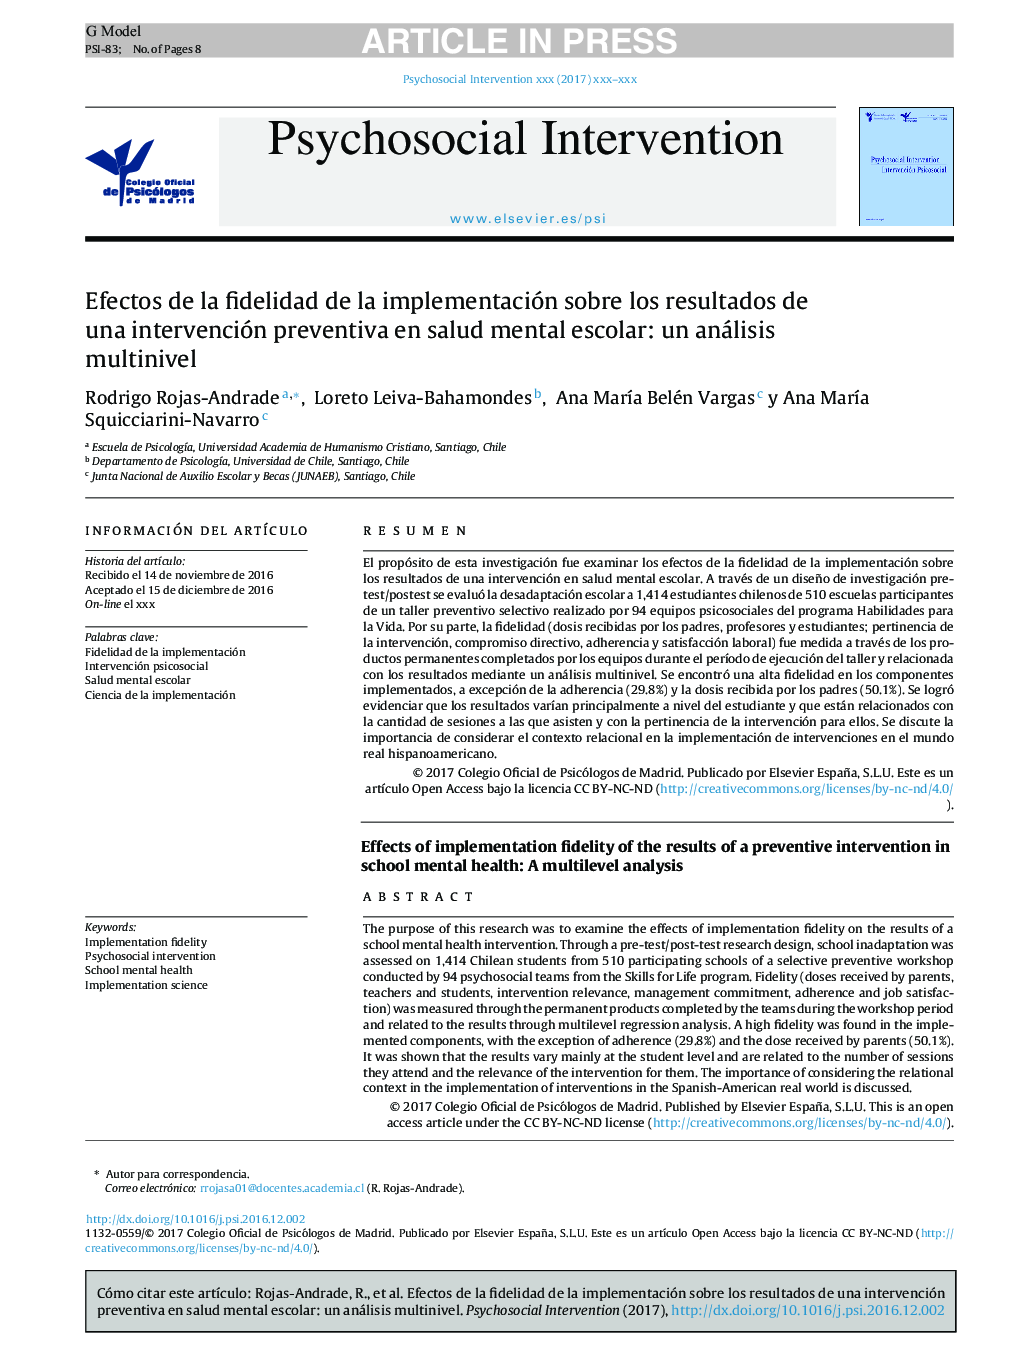 Efectos de la fidelidad de la implementación sobre los resultados de una intervención preventiva en salud mental escolar: un análisis multinivel